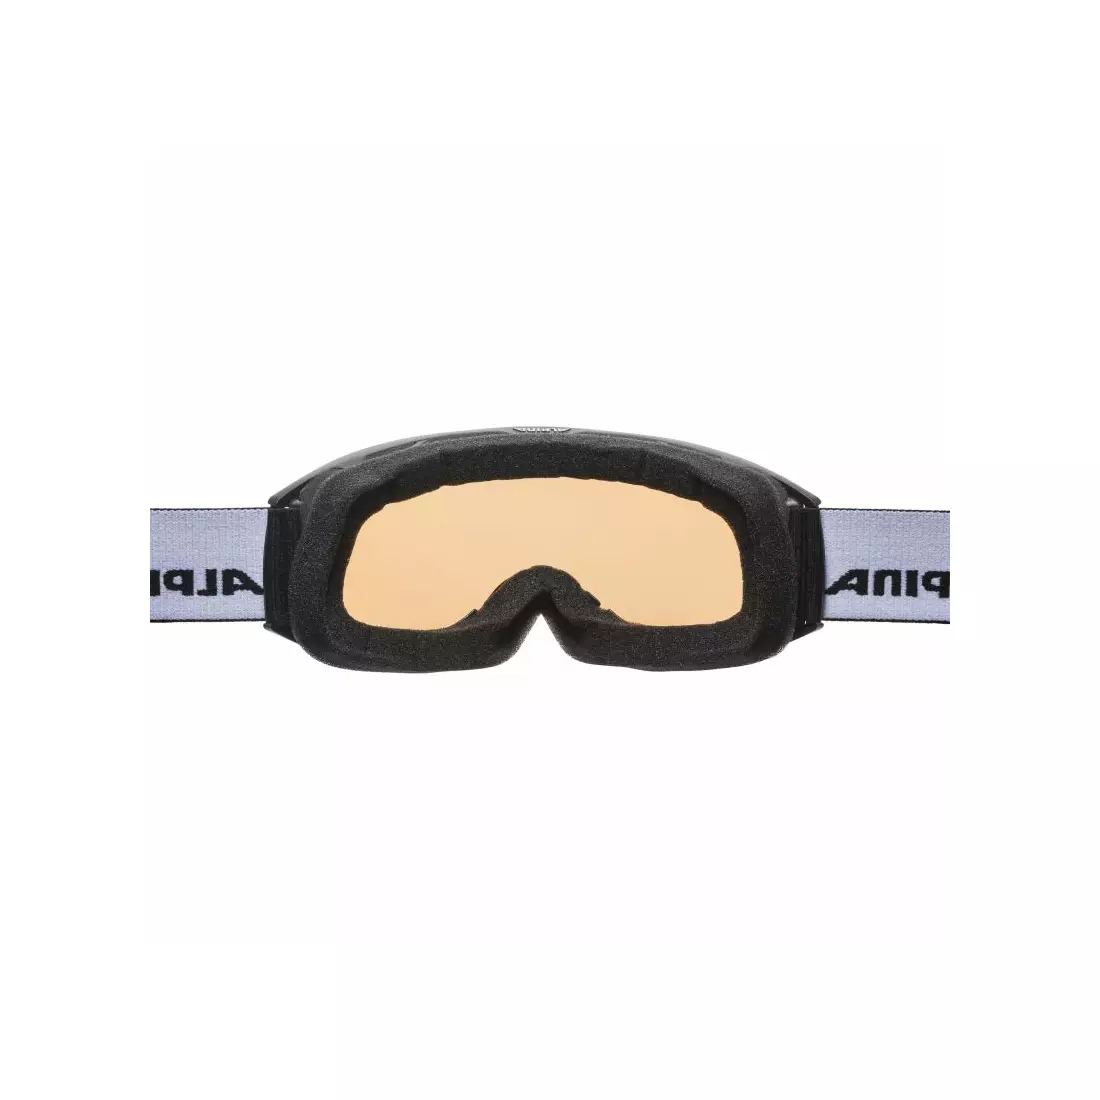 ALPINA lyžiarske / snowboardové okuliare M40 NAKISKA HM black A7280831